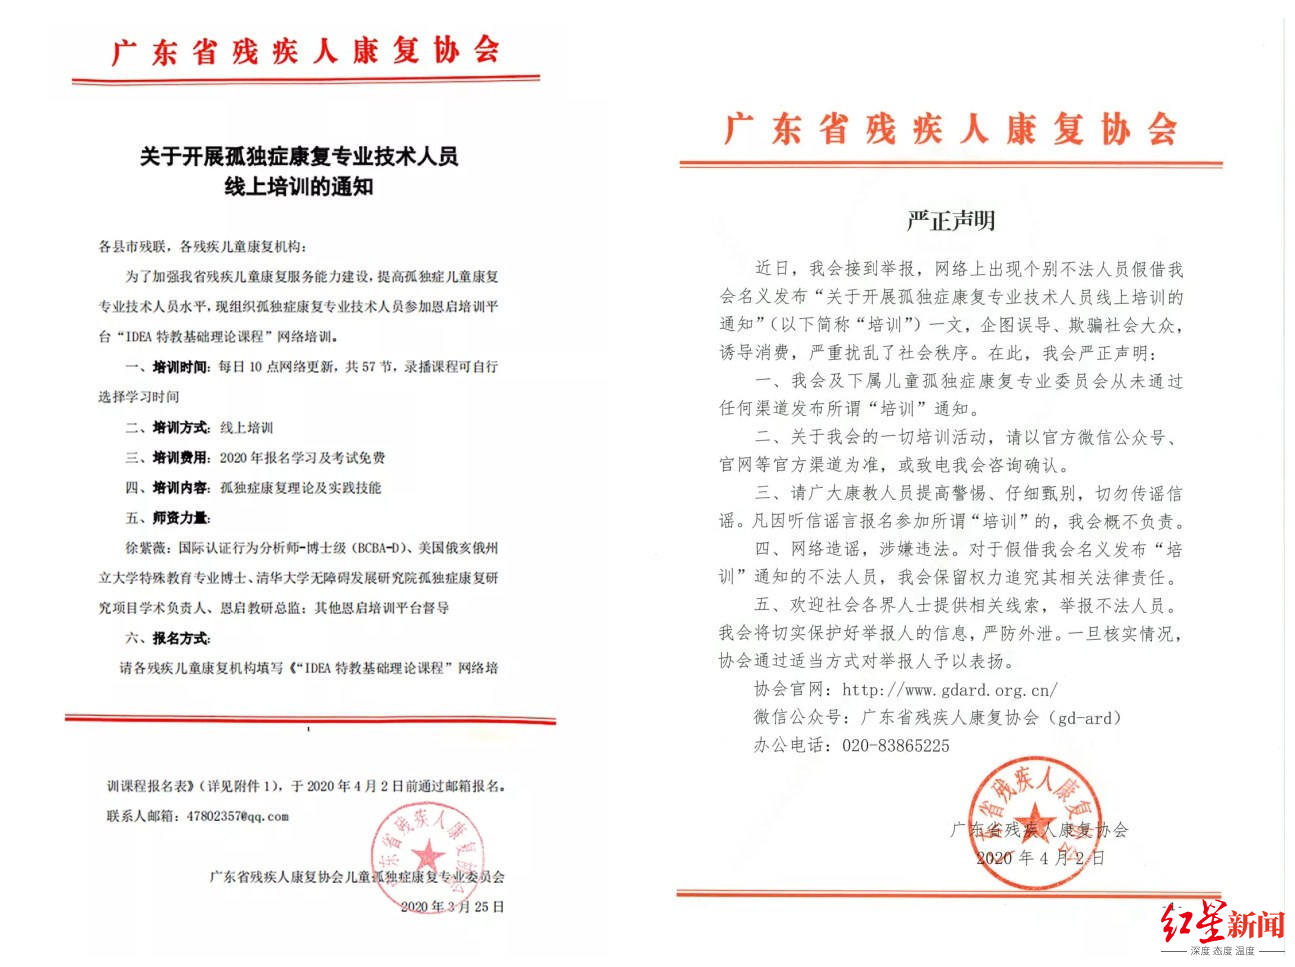 广东省残疾人康复协会发布的《通知》与此后发布的《严正声明》